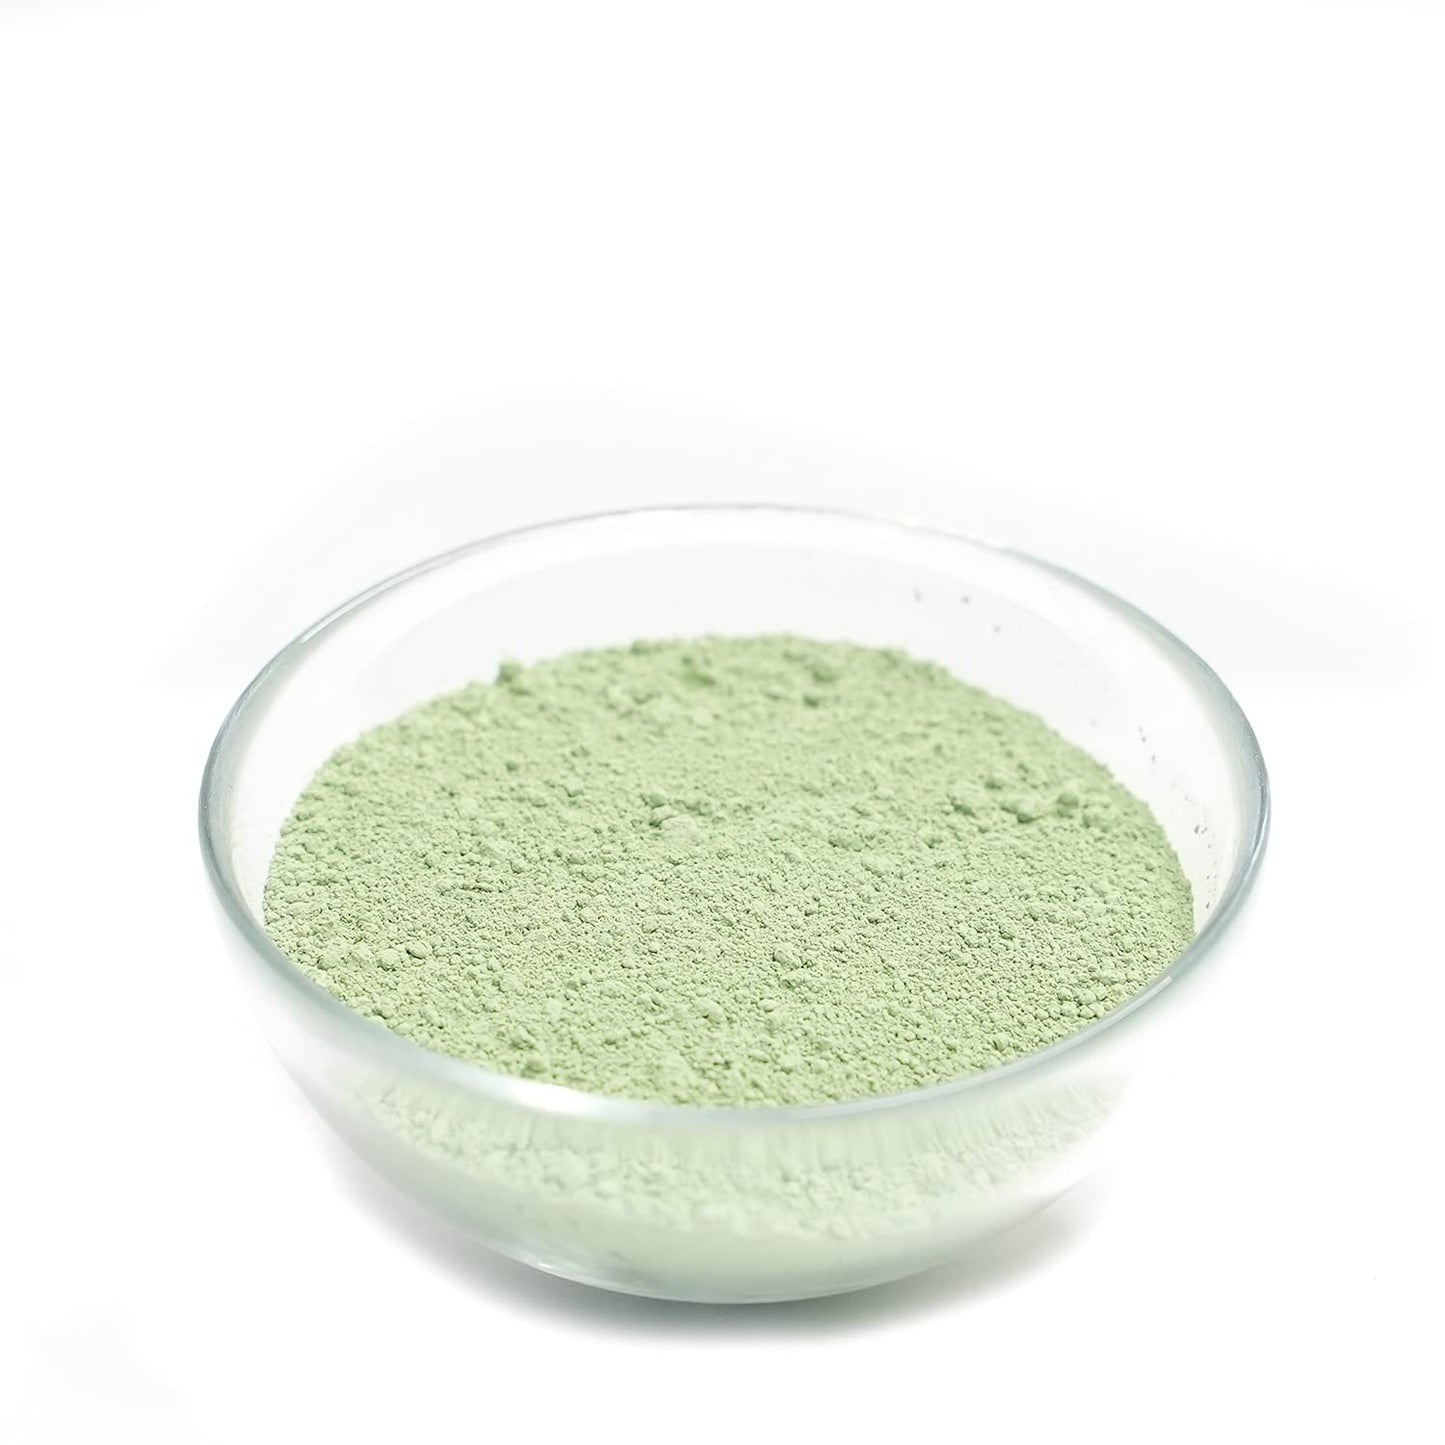 Kaolin Mint Green Clay